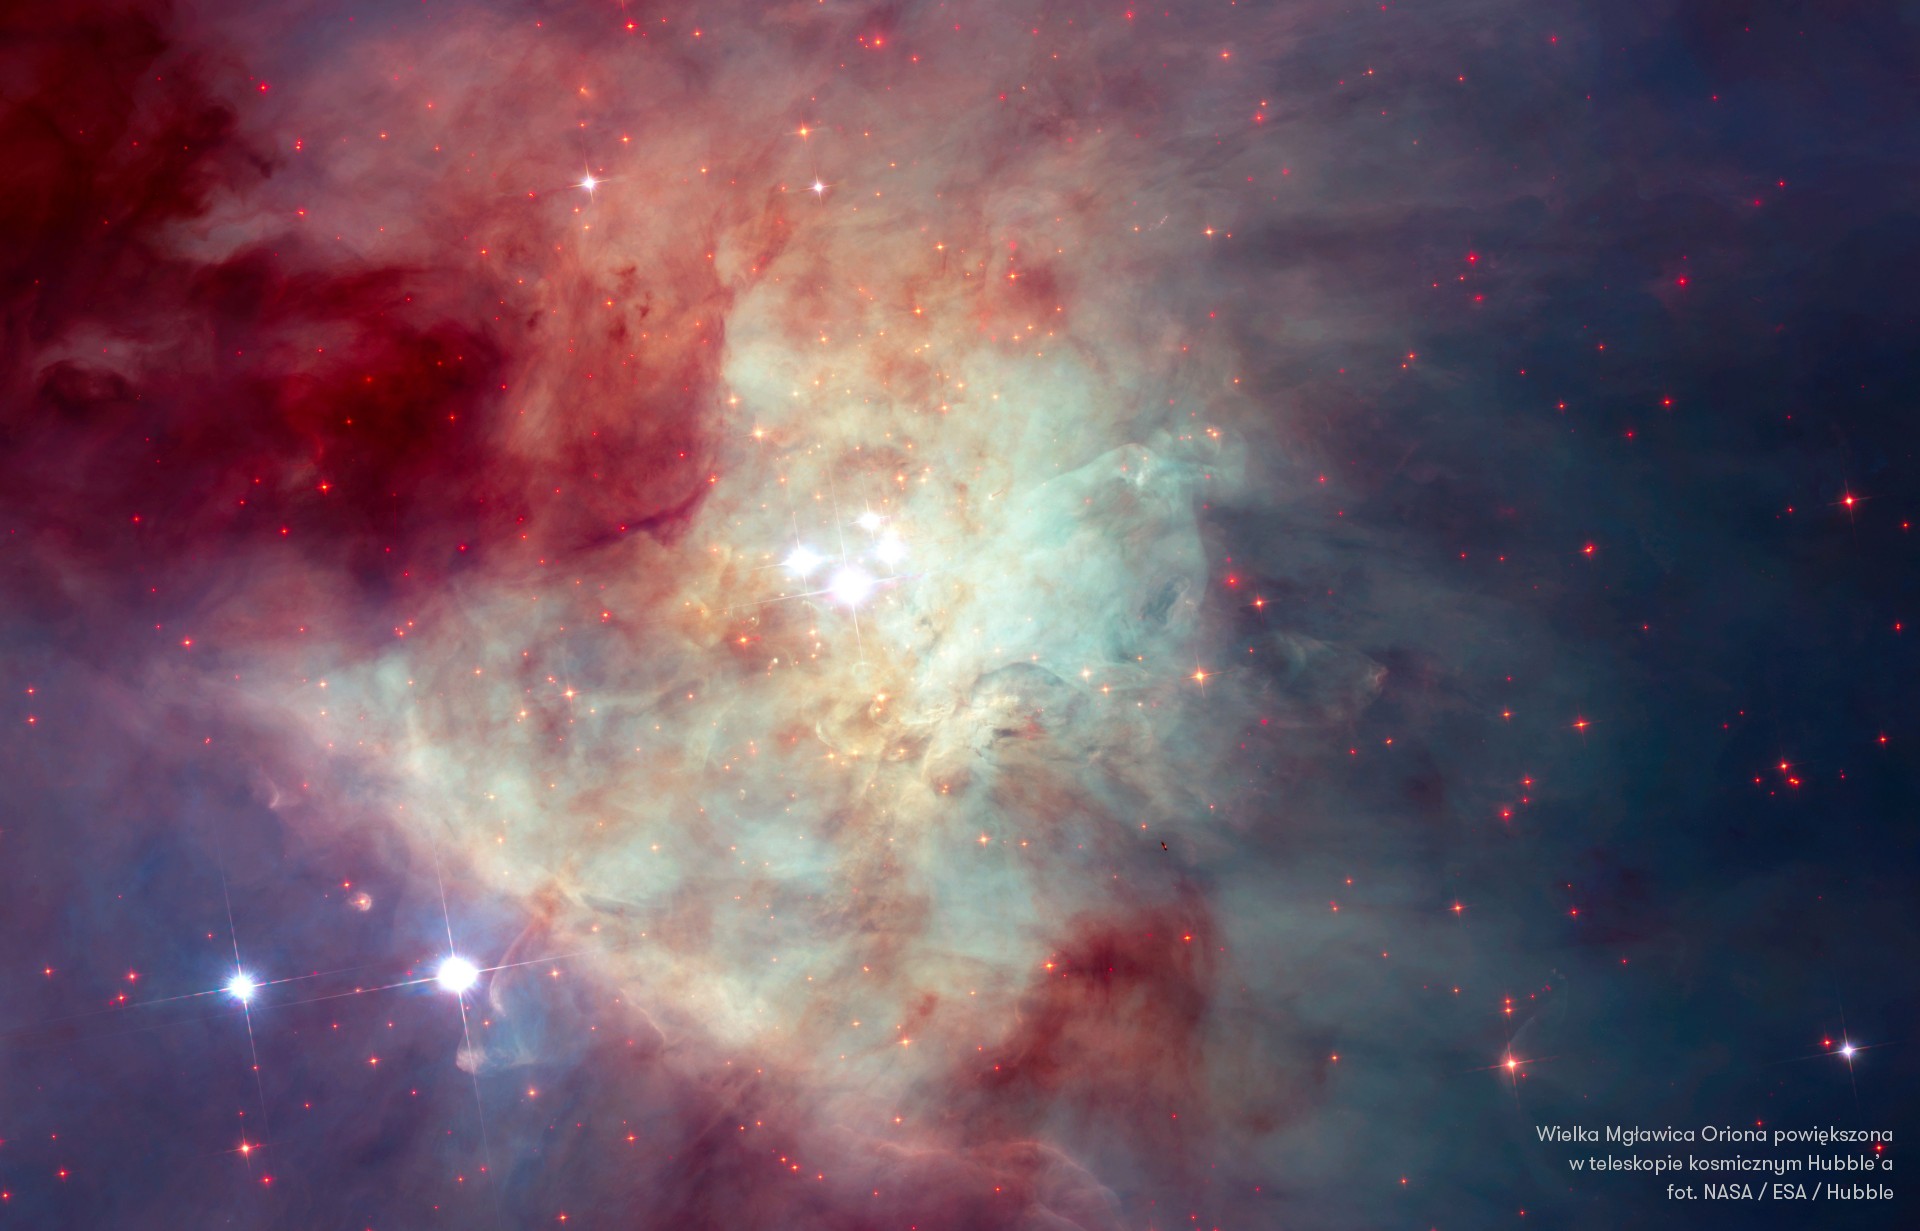 Wielka Mgławica Oriona powiększona w teleskopie kosmicznym Hubble’a